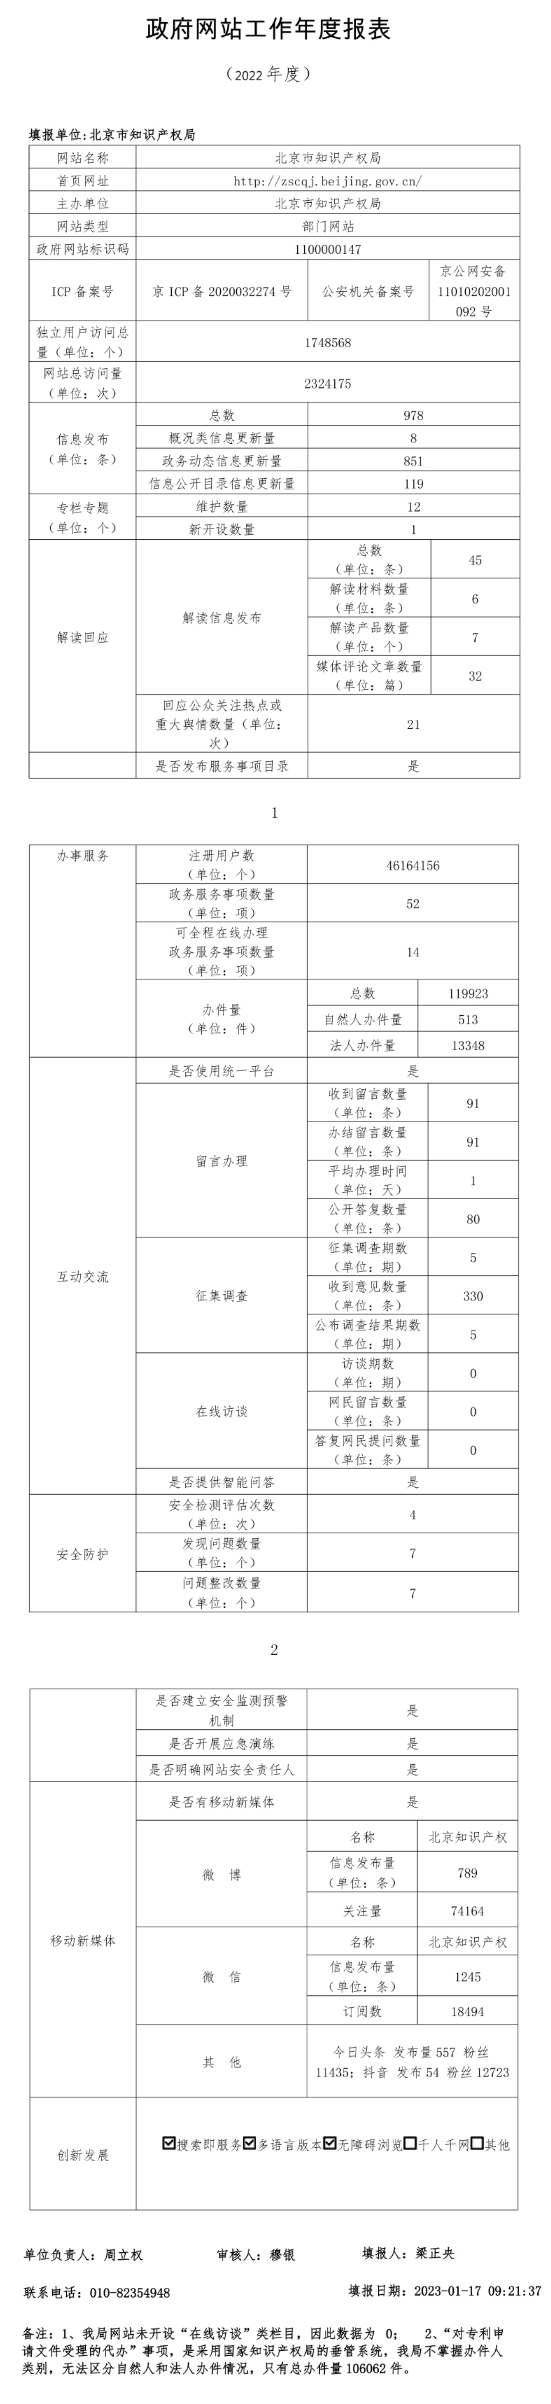 北京市知識産權局2022年政府網站年度工作報表